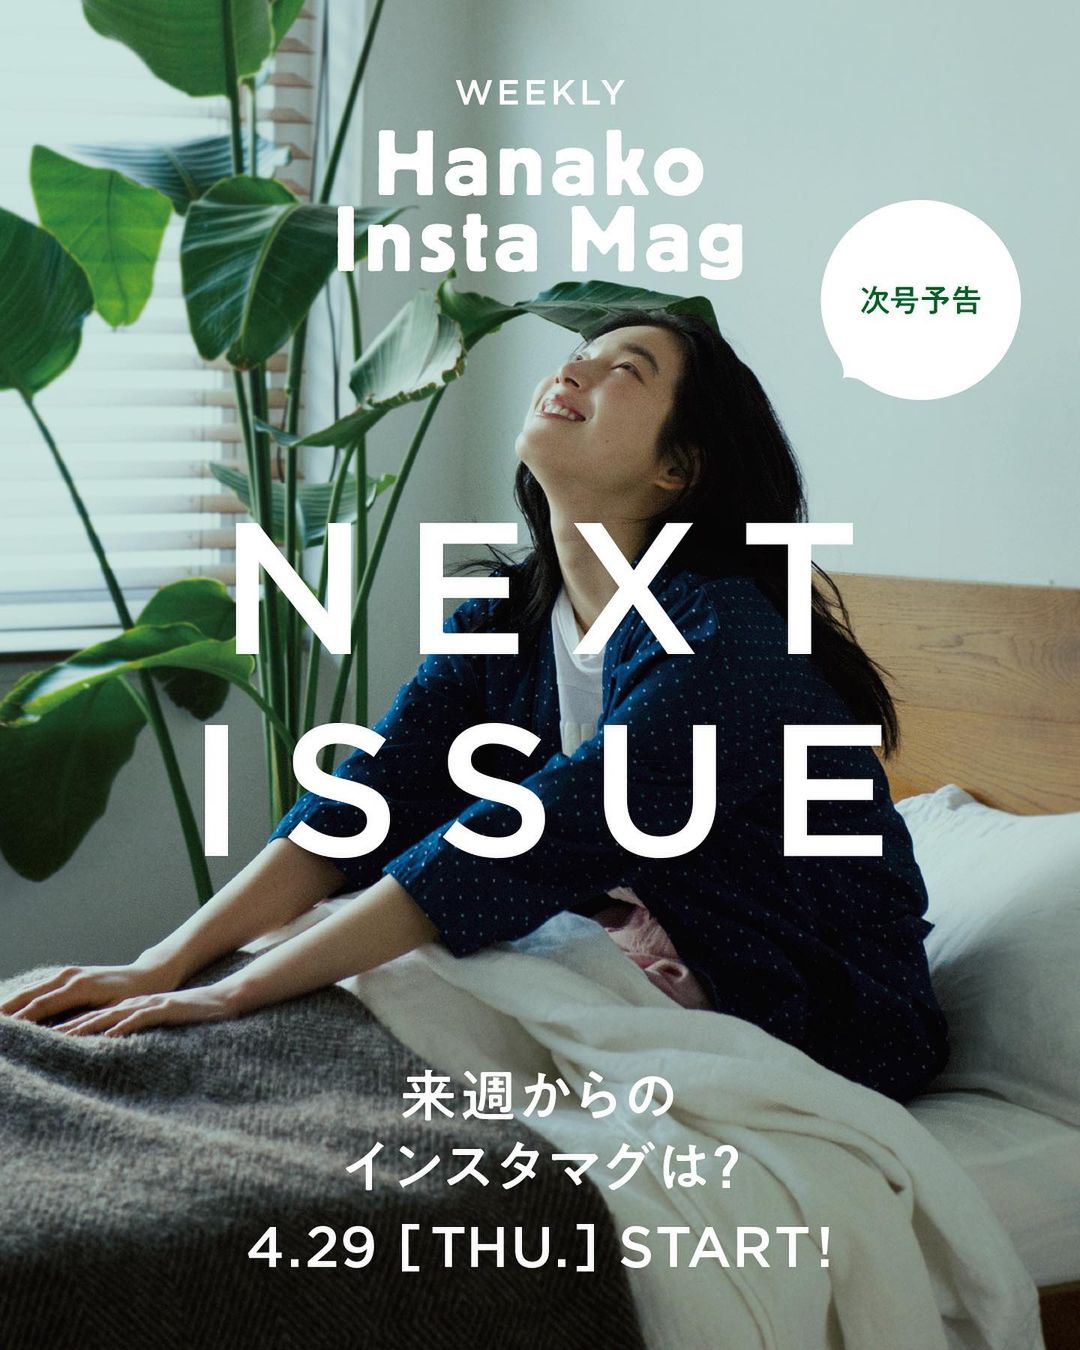 Hanakomagazine 来週からのインスタマグは 免疫力を高めるために朝できること 10秒で見てわかる 見て学ぶ インスタグラムマガジン Hanako Ins Wacoca Japan People Life Style